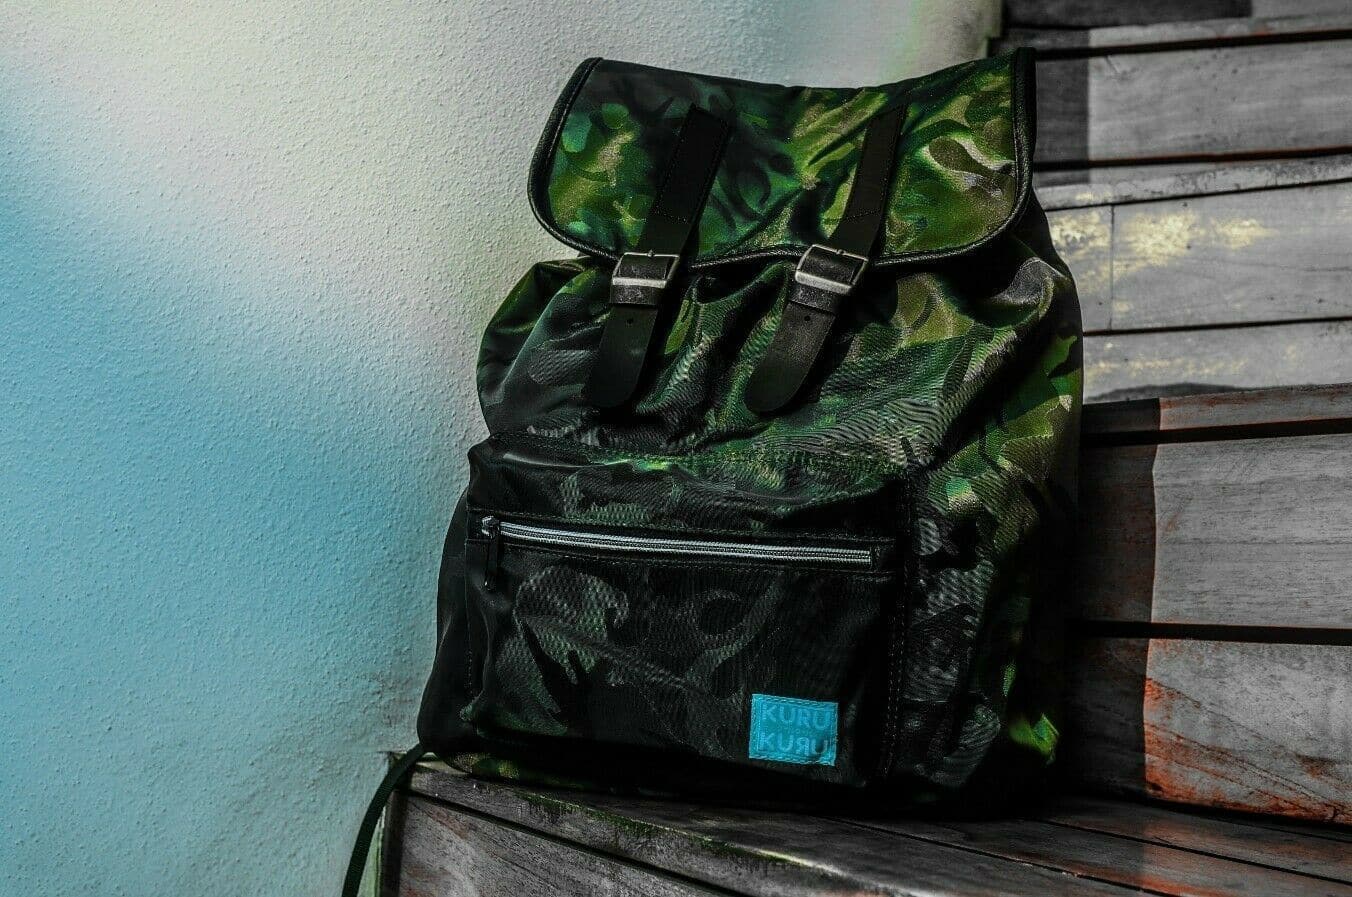 Kuru Kuru クールクール Throb Backpack Bag Camo Green Twill VM-81010